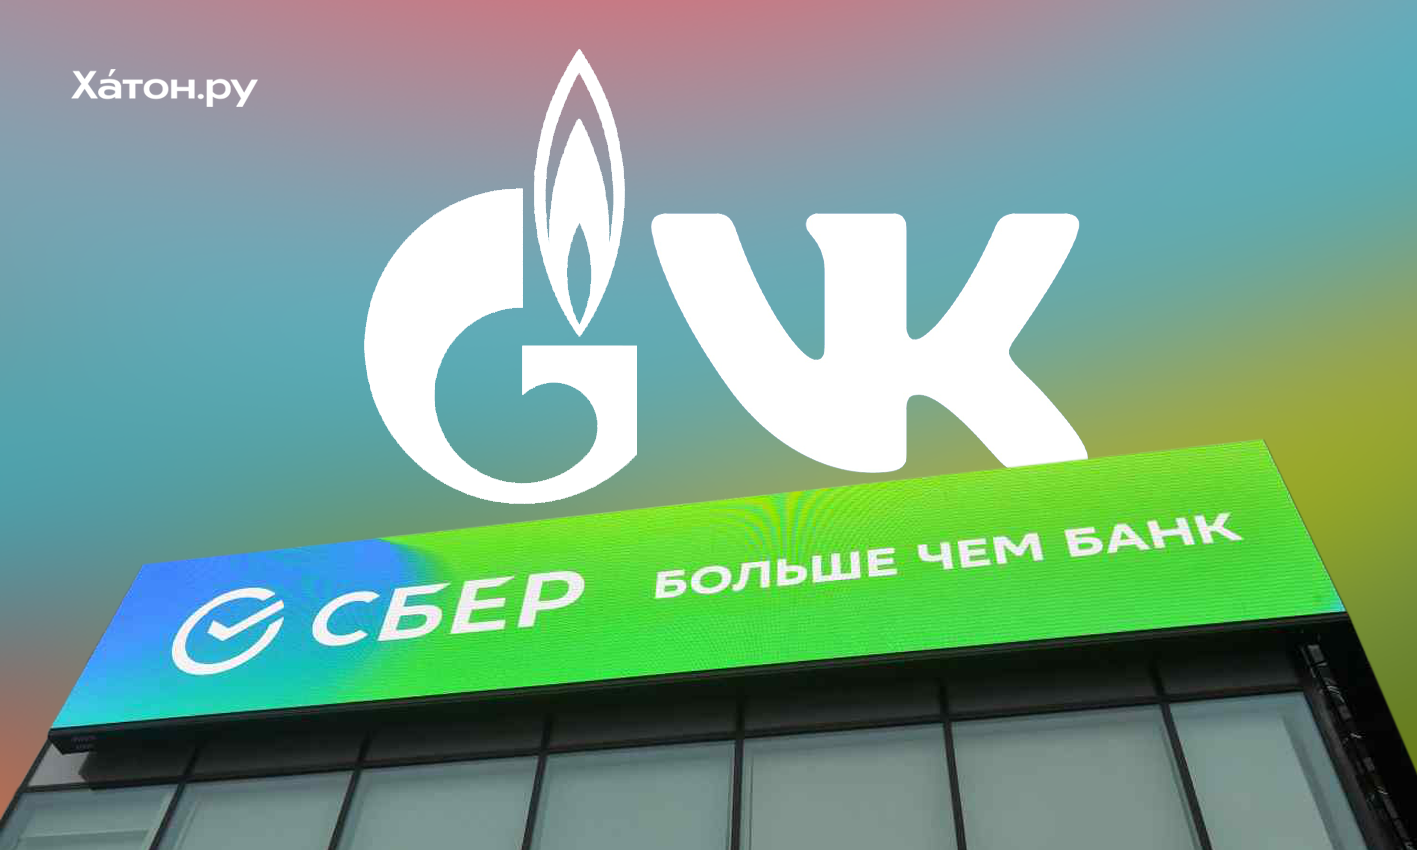 Сбербанк продаст Газпромбанку 36% акций в контролирующей 57,3% VK компании